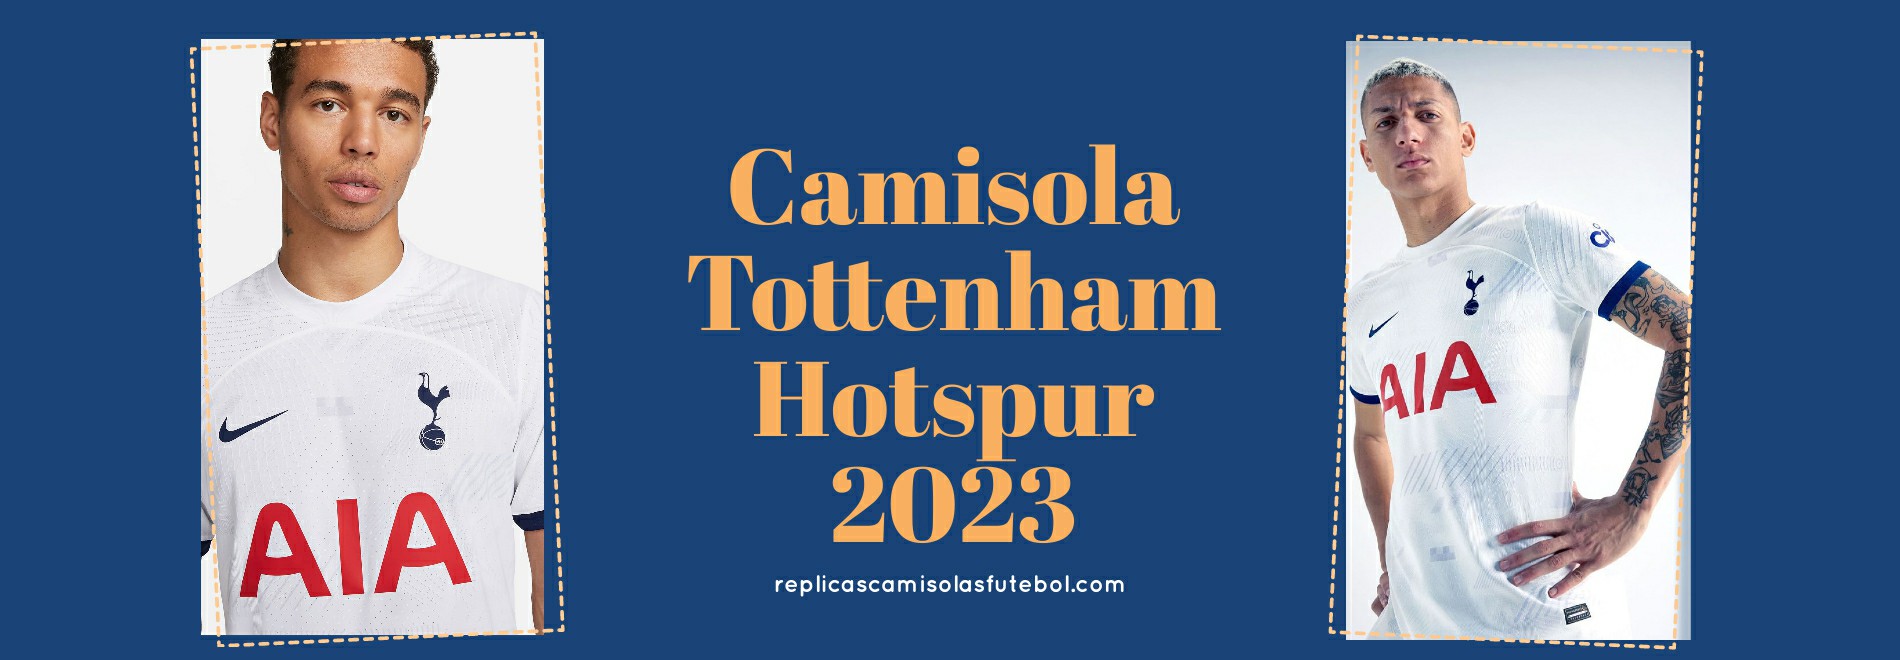 Camisola Tottenham Hotspur 2023-2024